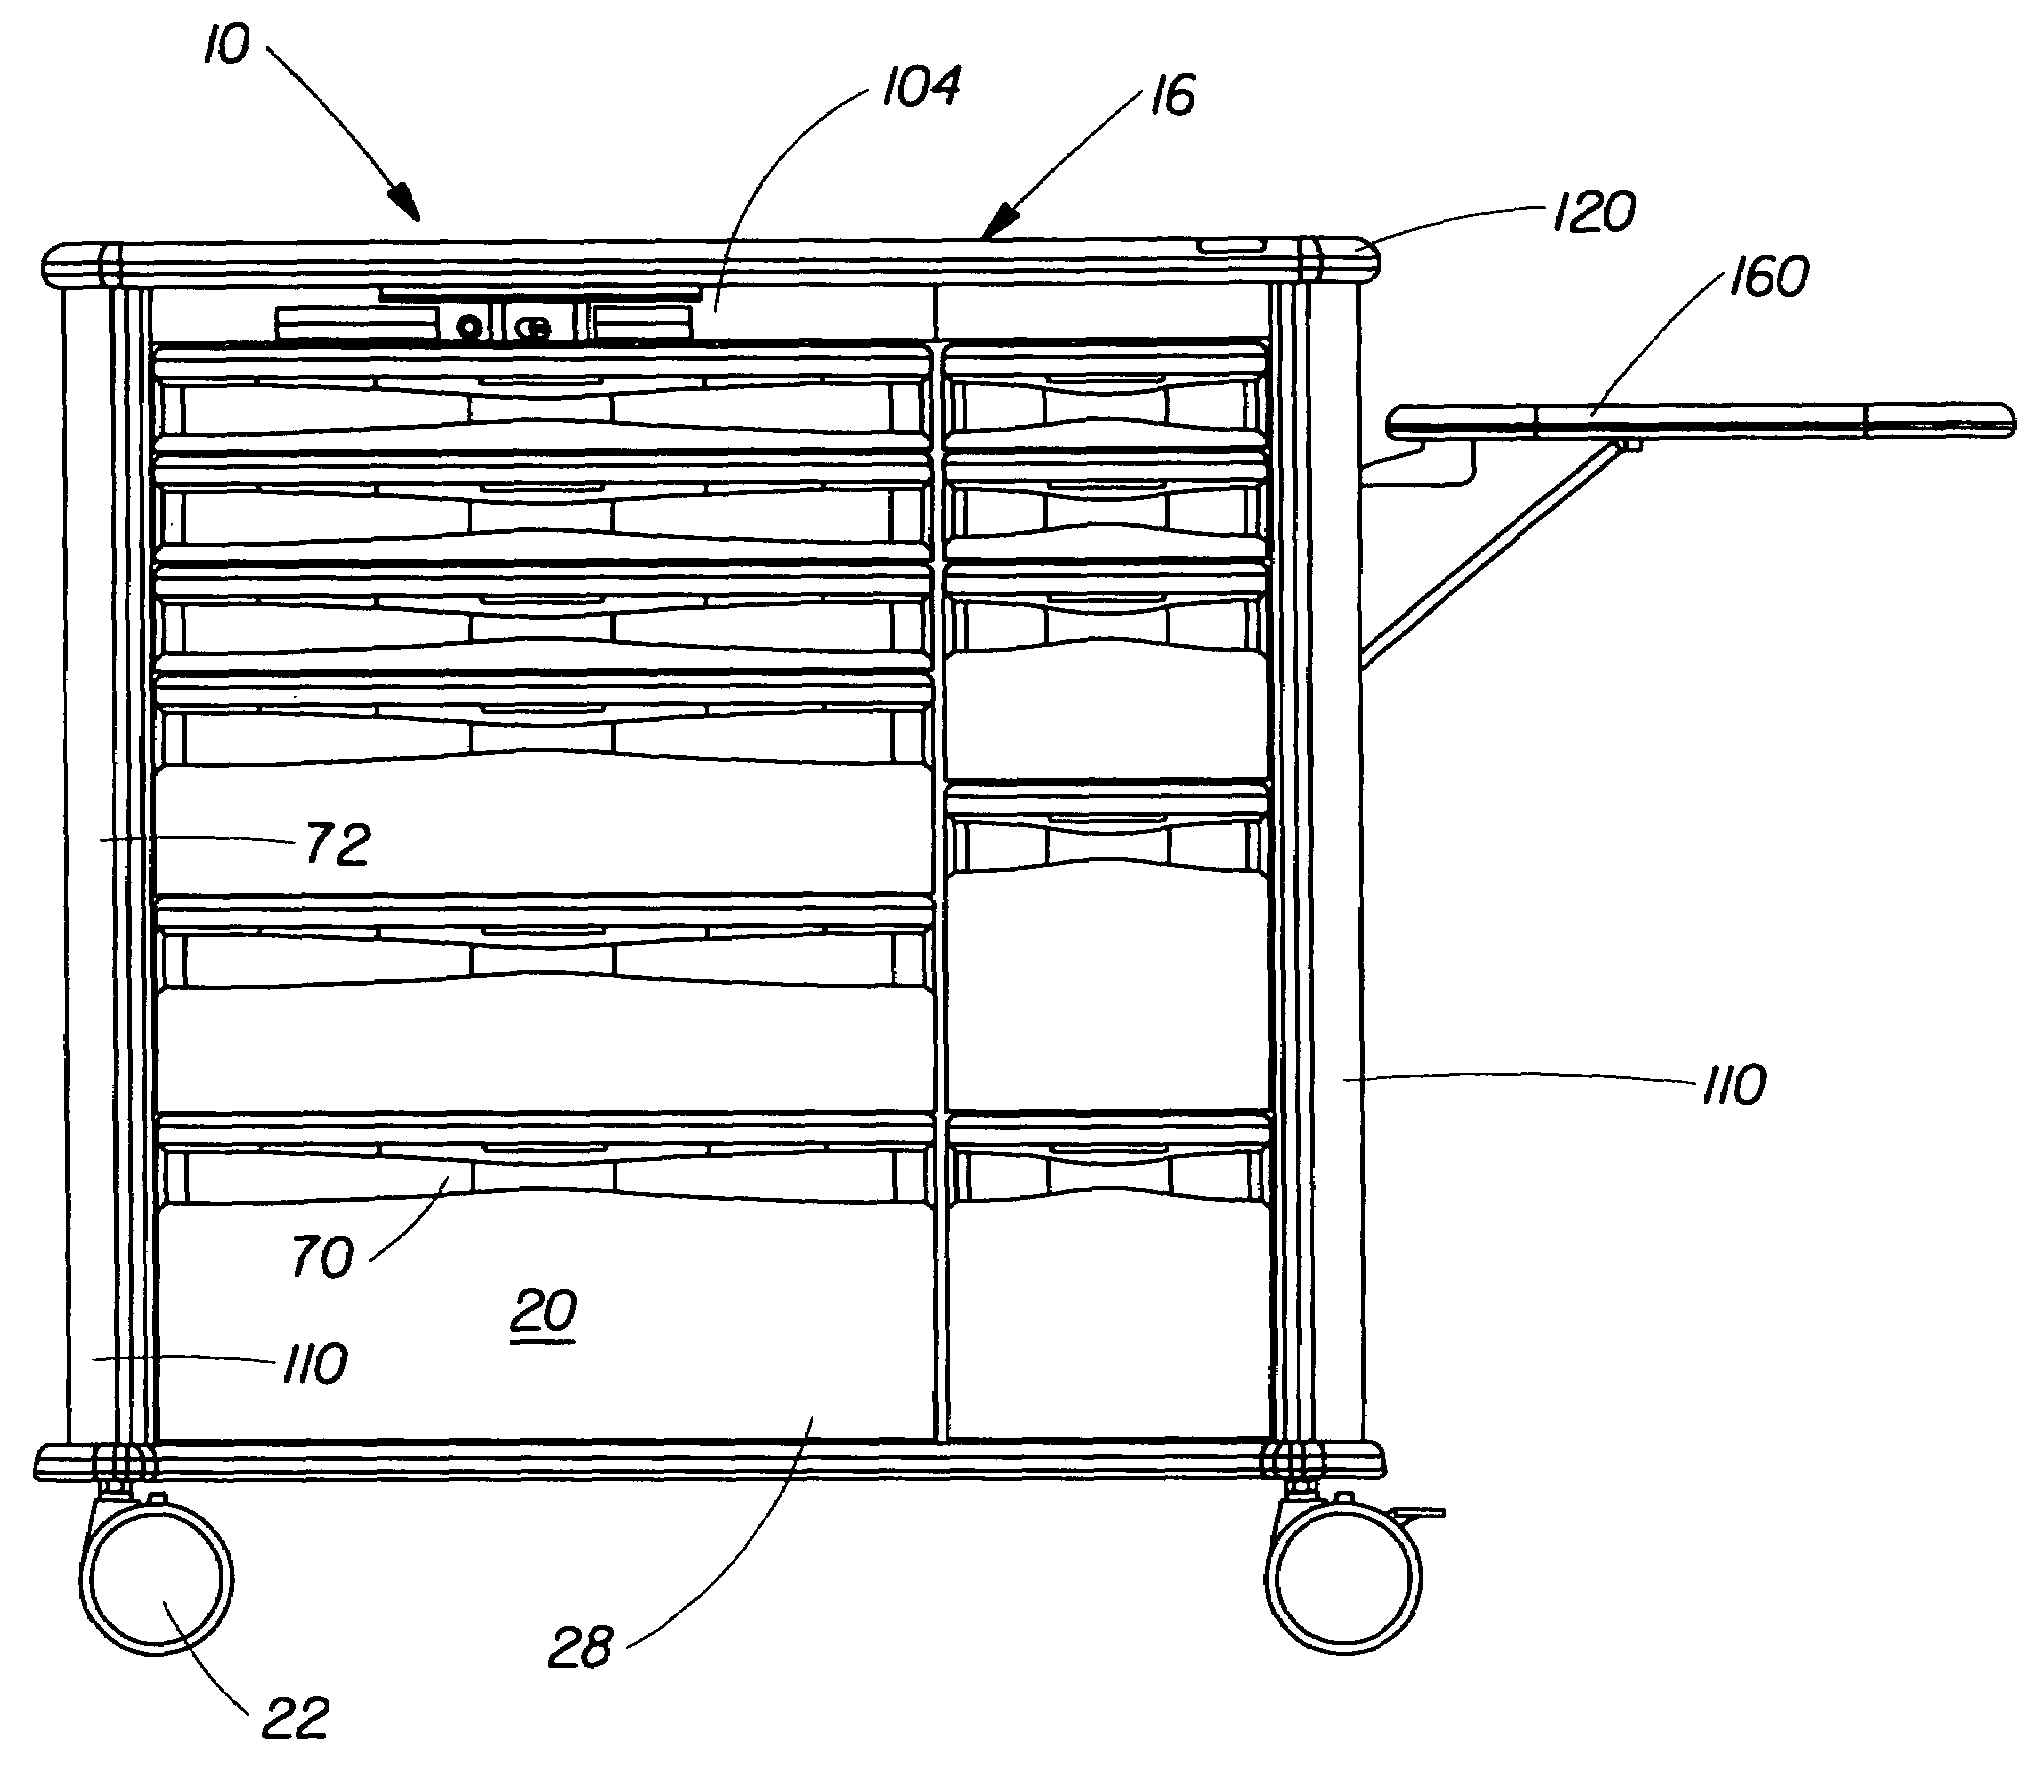 Modular drawer system